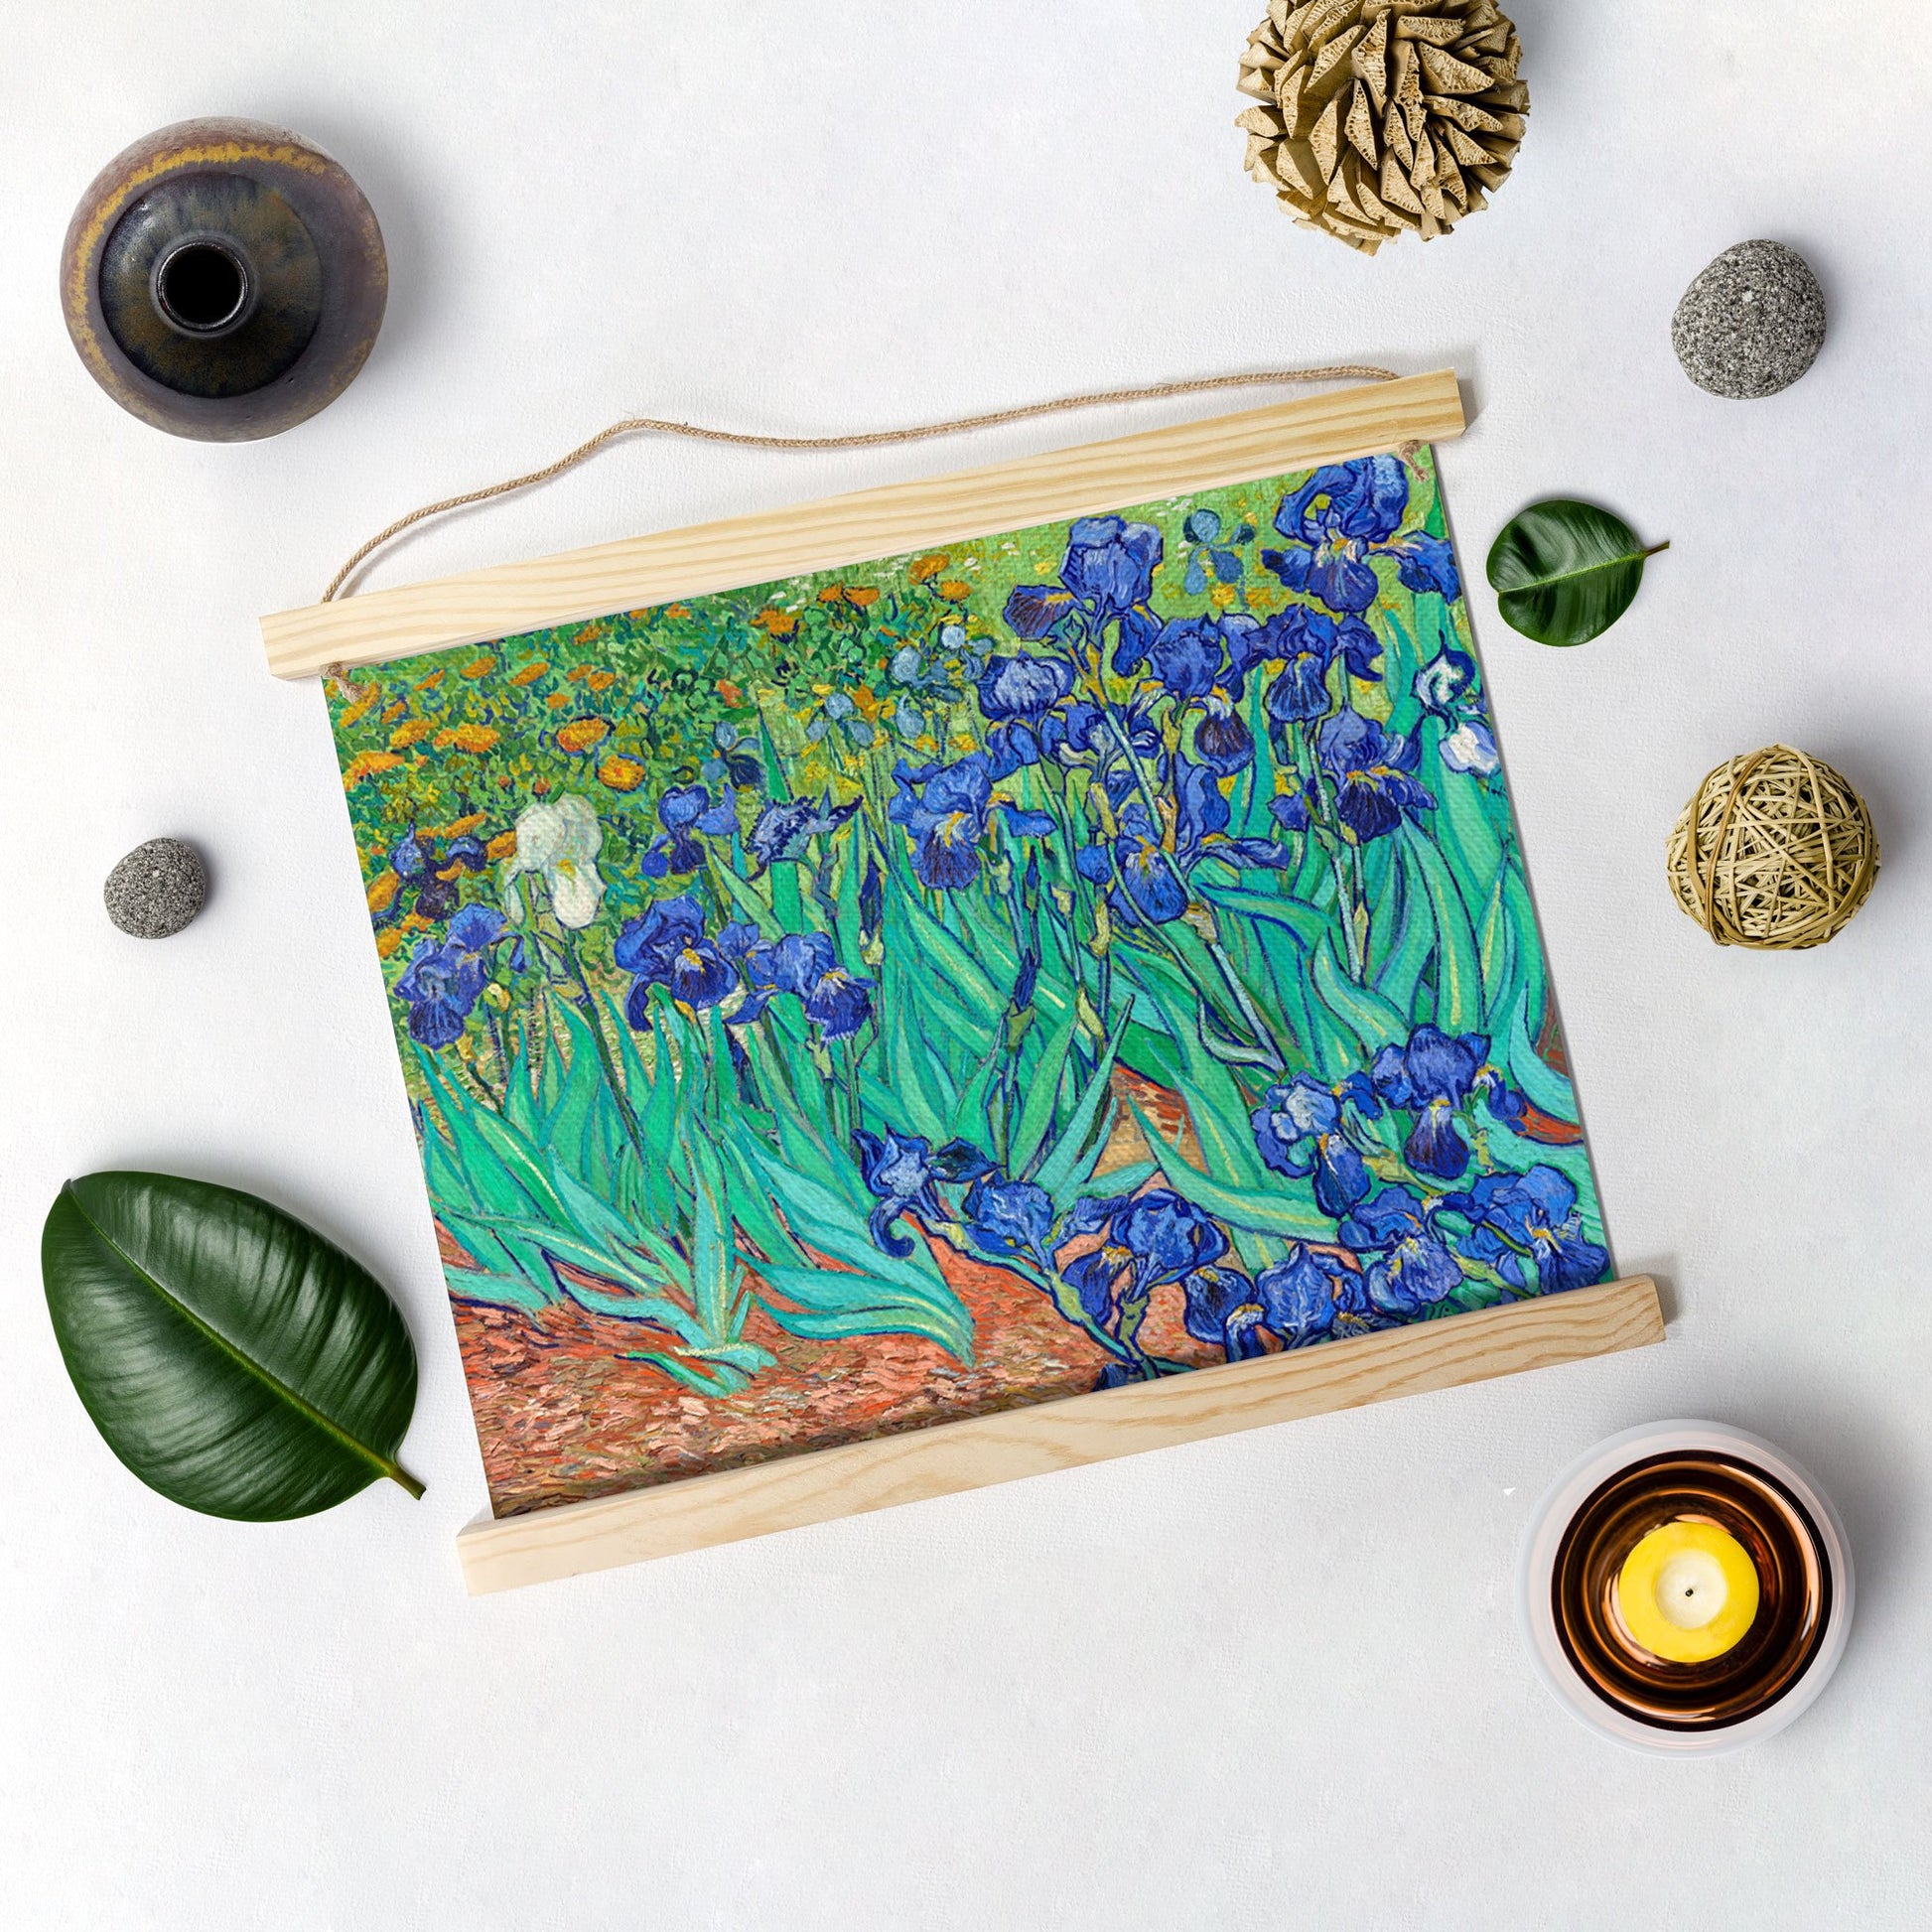 Irises Growing In A Garden By Van Gogh Hanging Canvas Painting - Meri Deewar - MeriDeewar